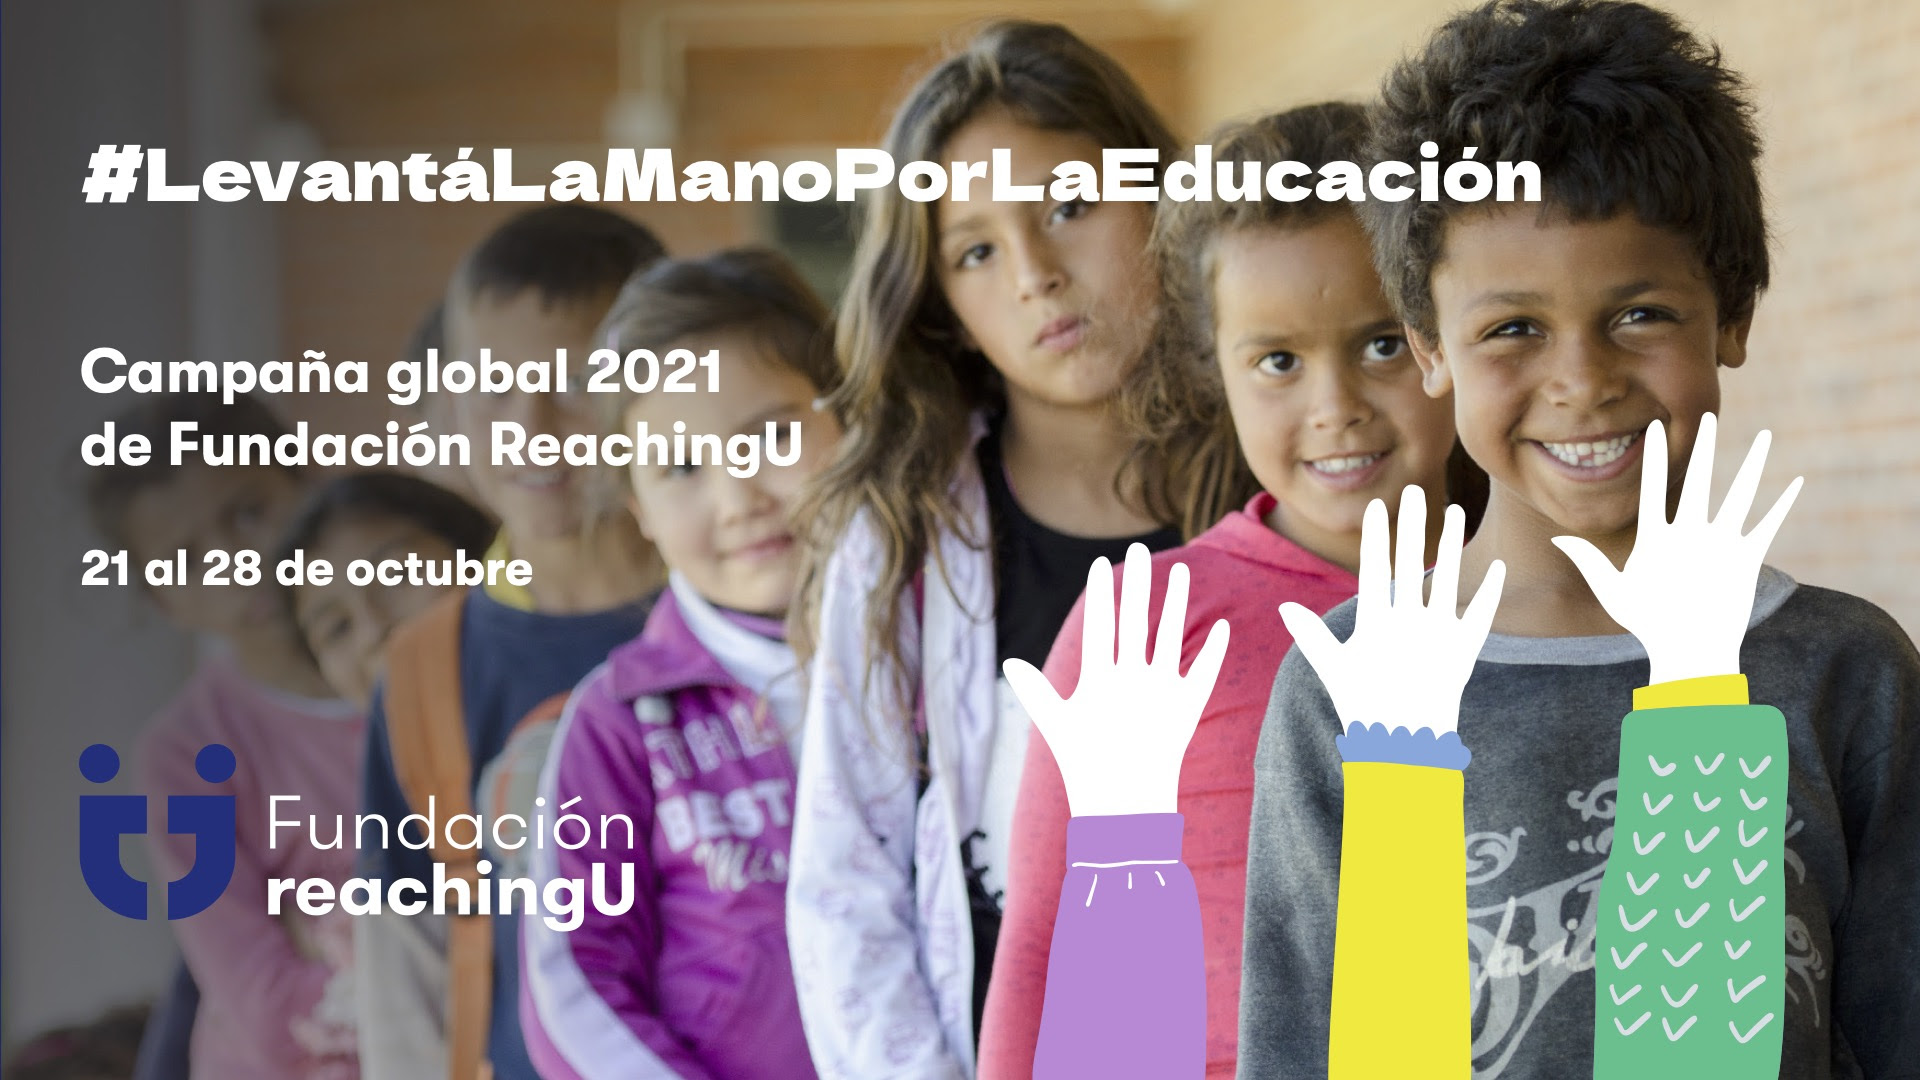 Campaña global 2021 de Fundación ReachingU - 21 al 28 de octubre